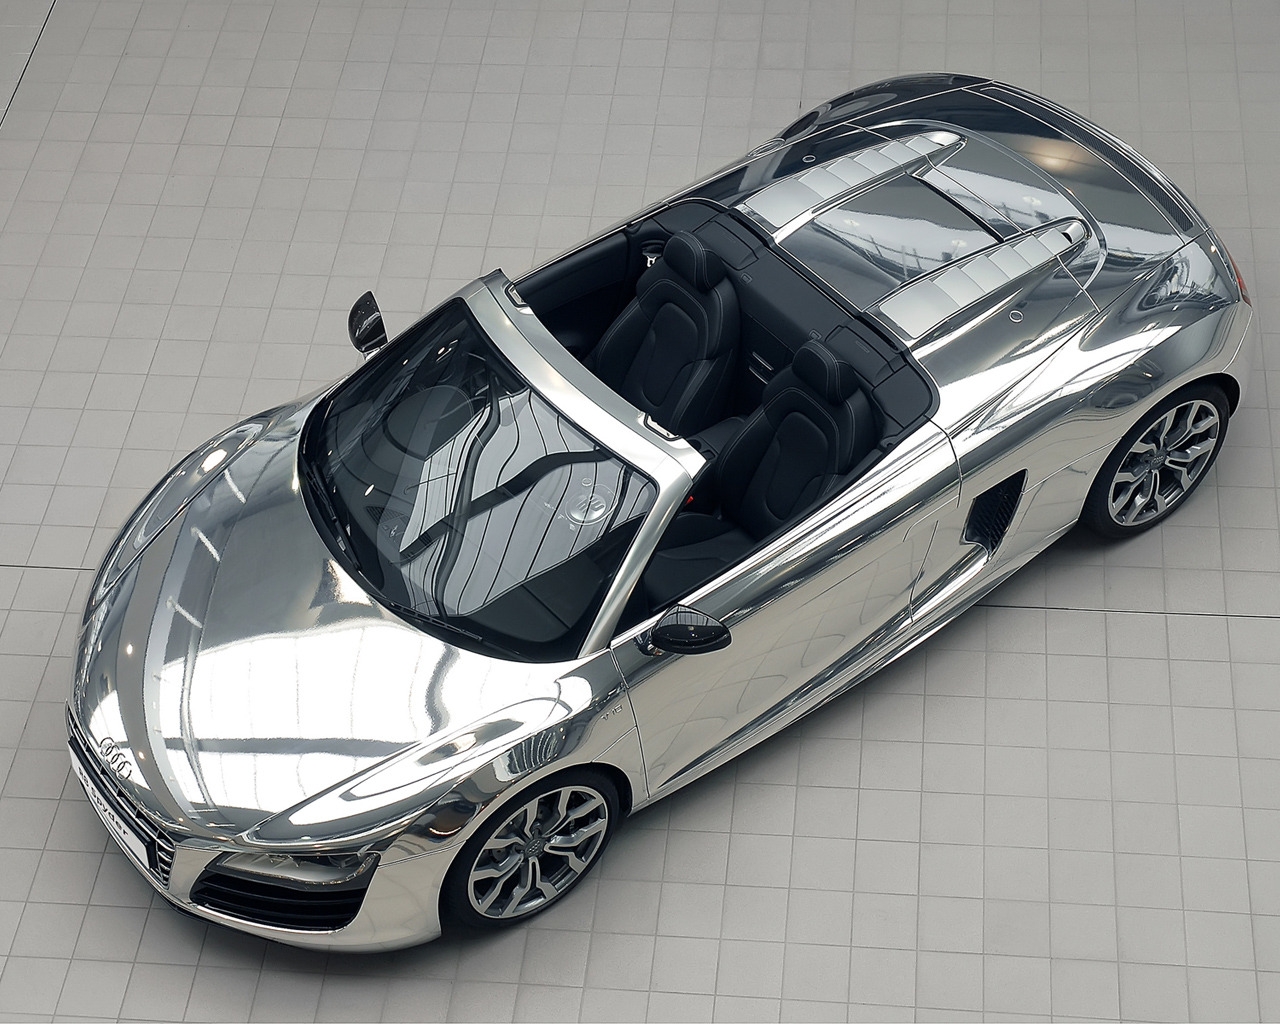 Audi R8 V10 Spyder Chrome for 1280 x 1024 resolution